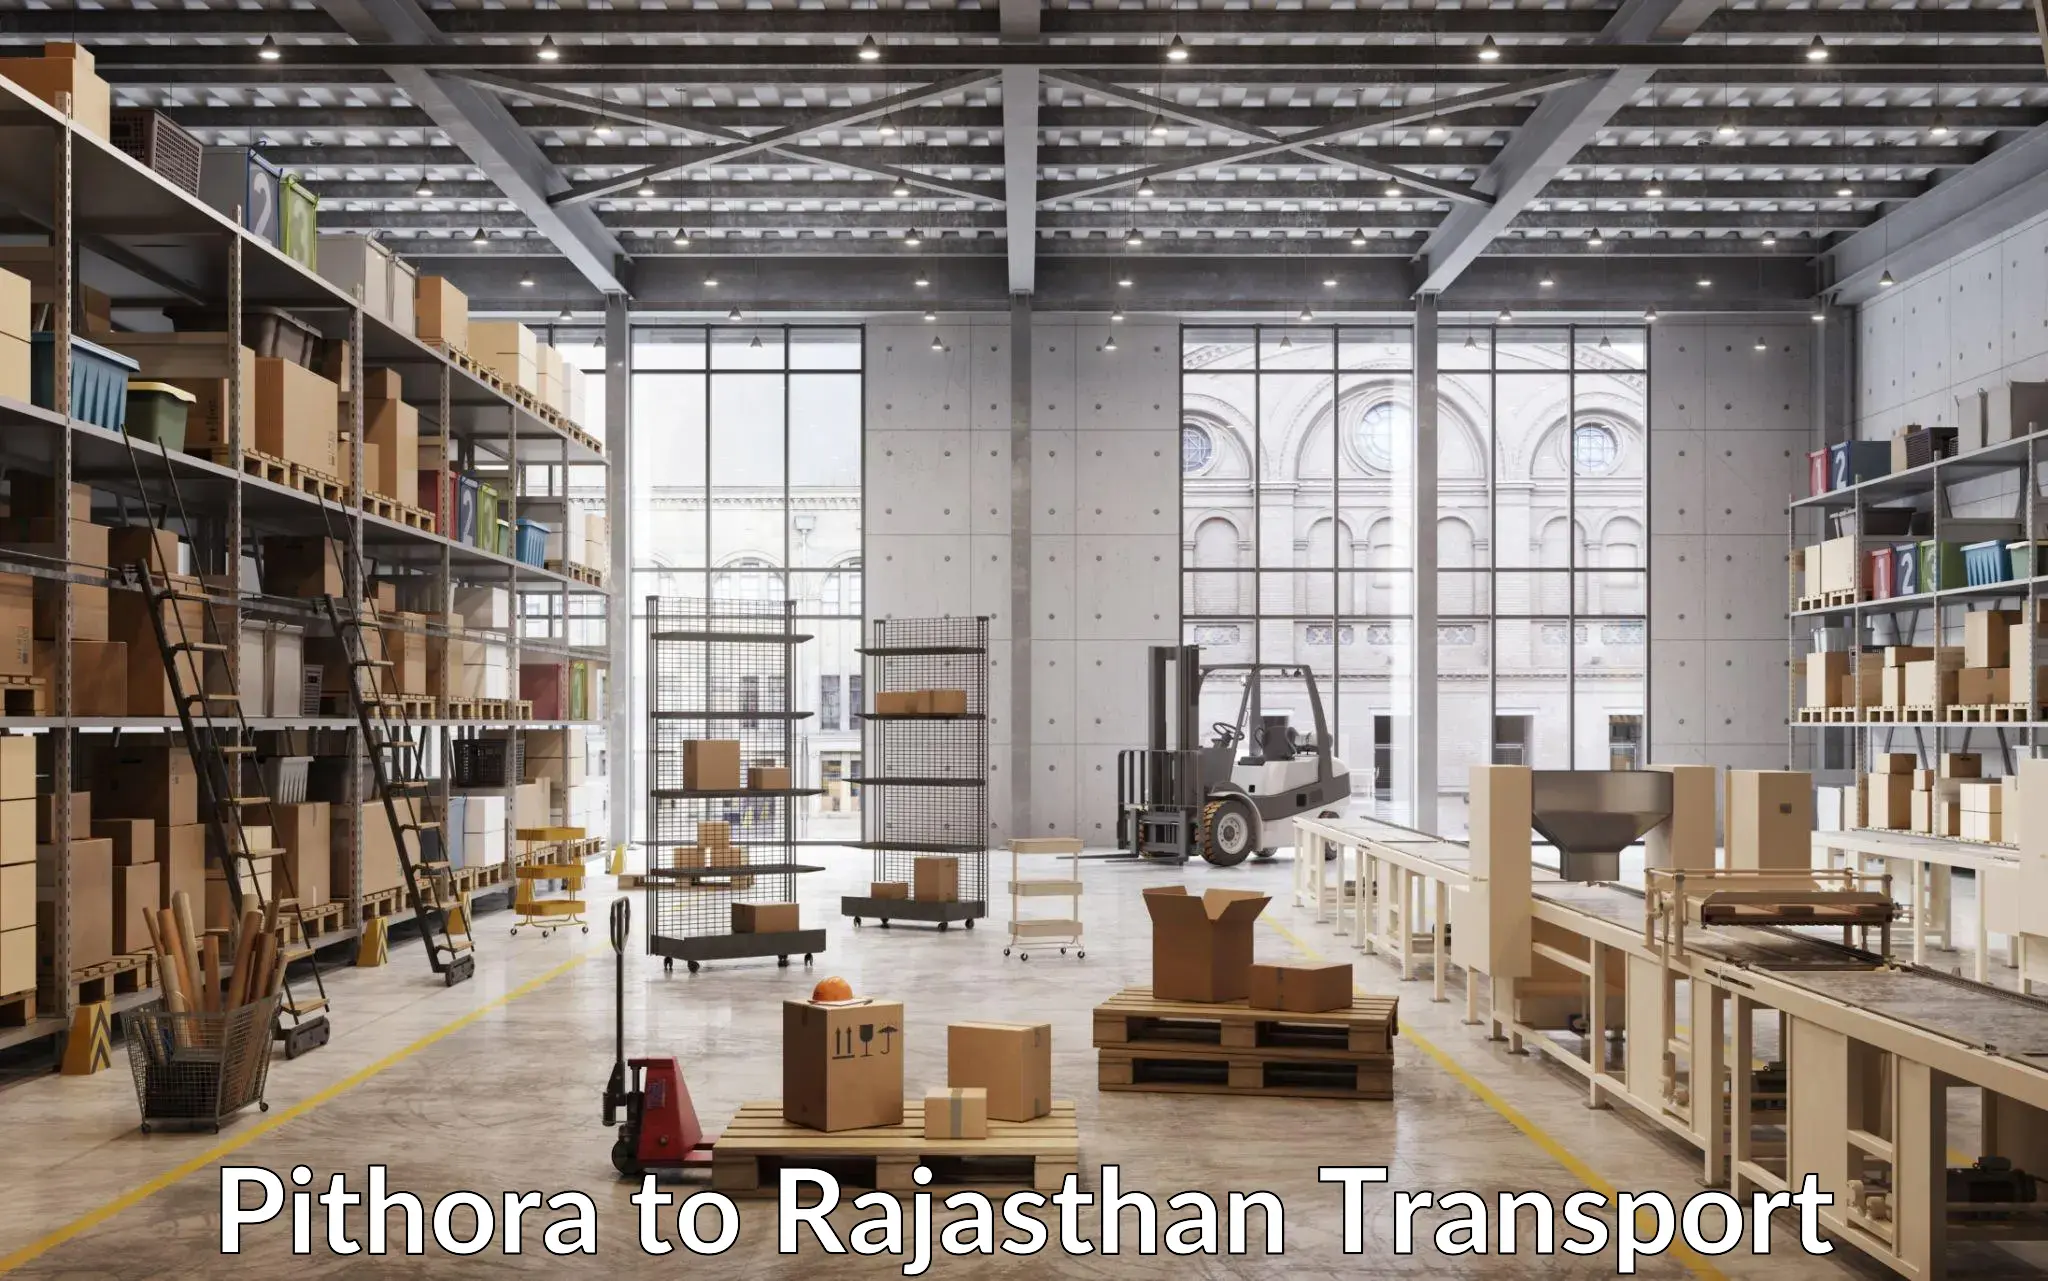 Bike transport service Pithora to Rajasthan